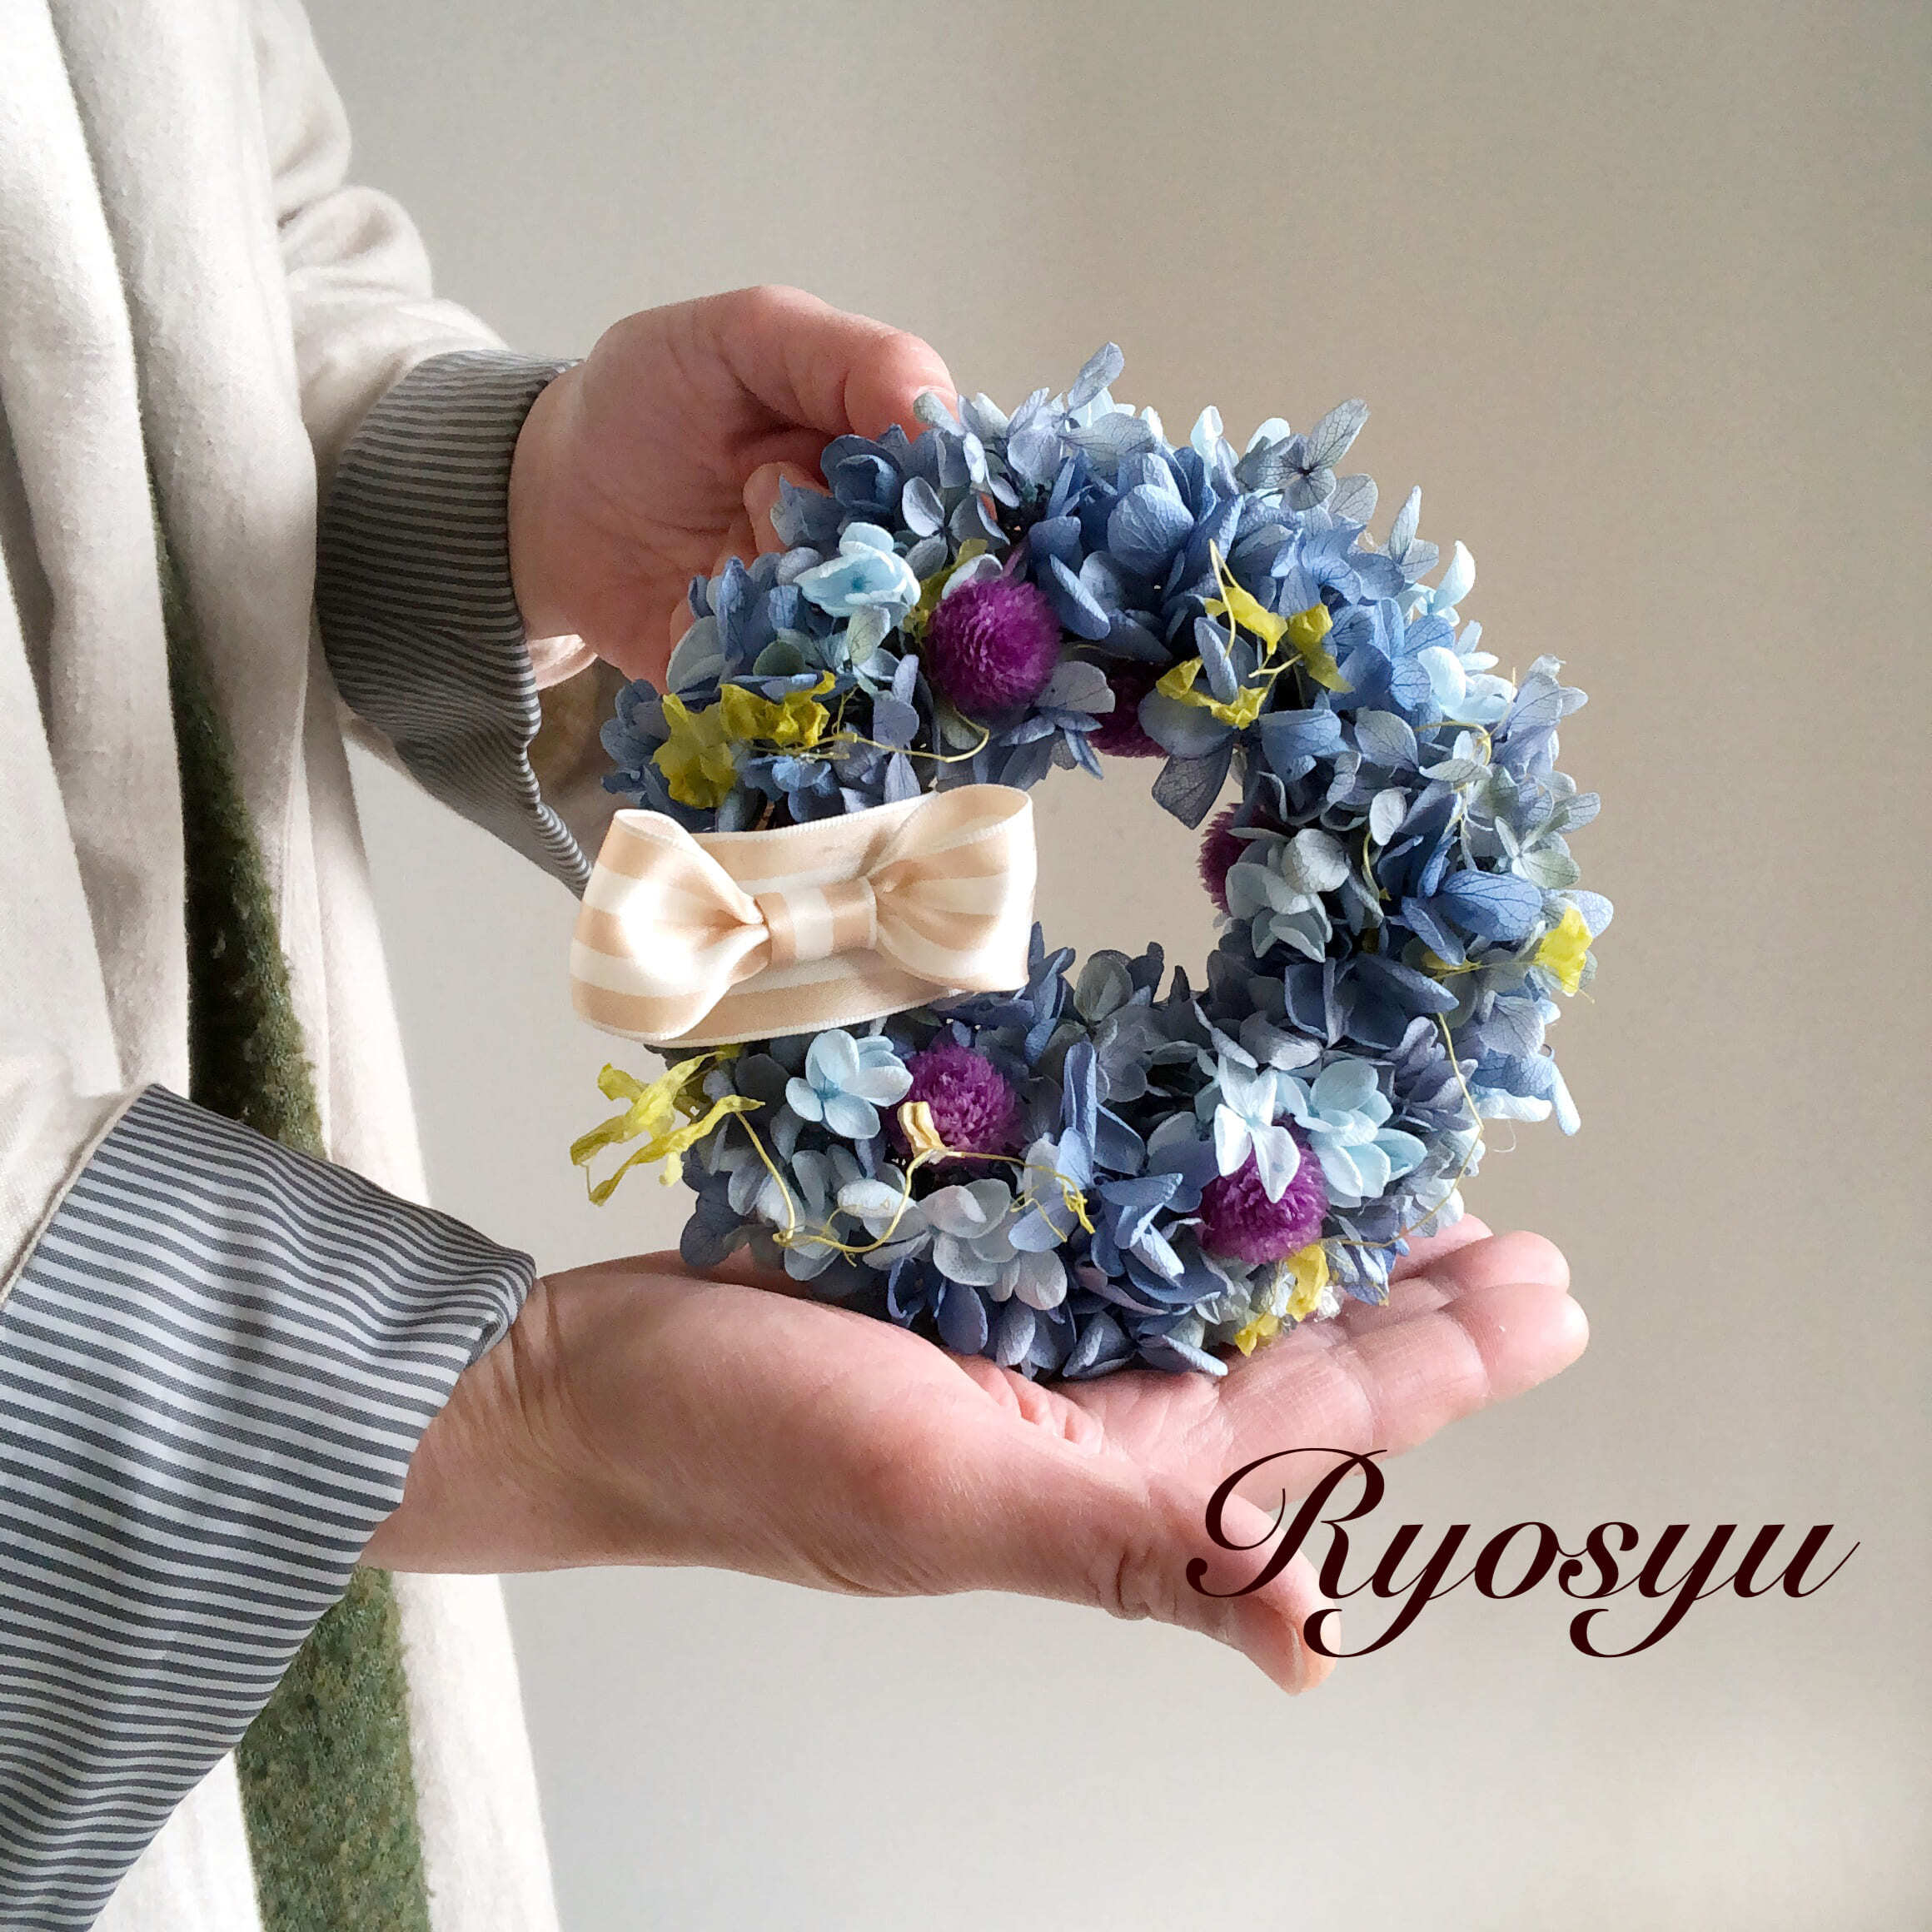 お花のリース*ブルー紫陽花・Sサイズ | お花作家の店 良秋Ryosyu